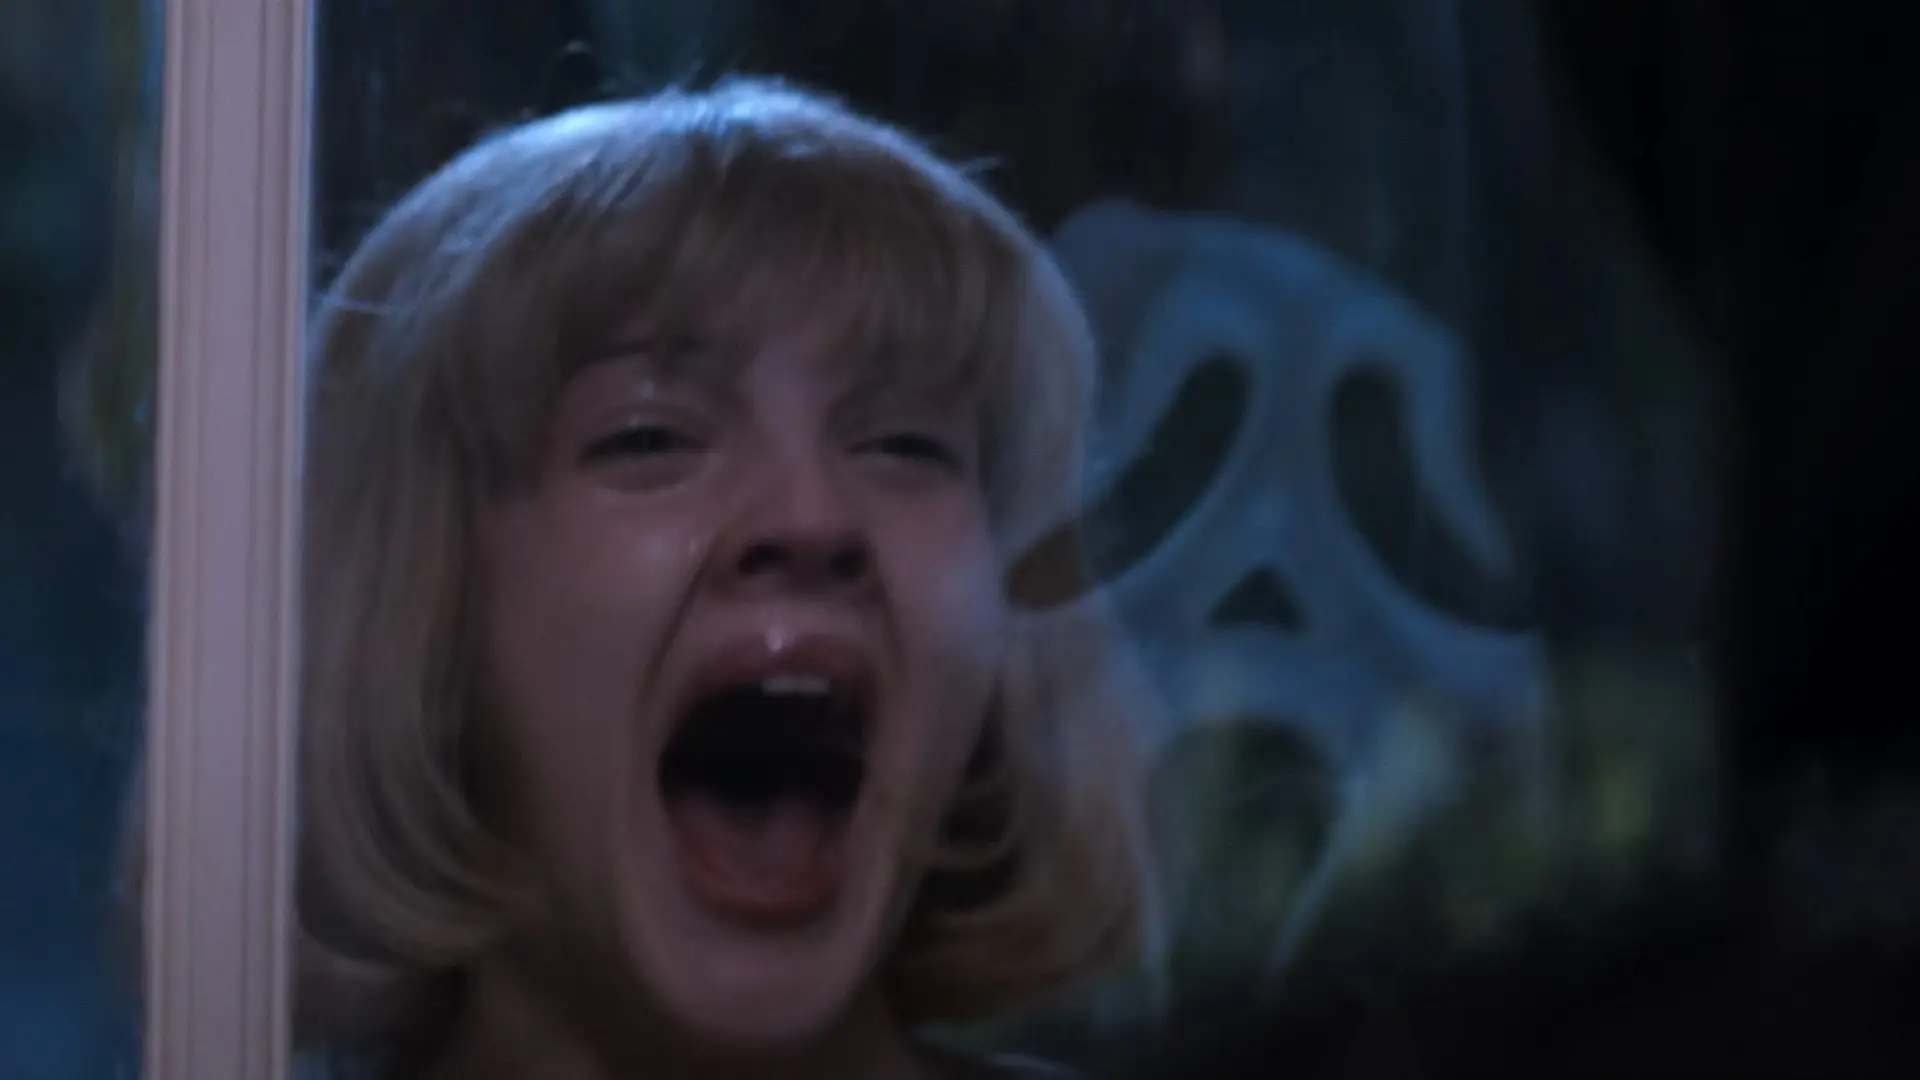 Fotograma de Scream con una mujer gritando asustada al ver una mascara blanca que grita